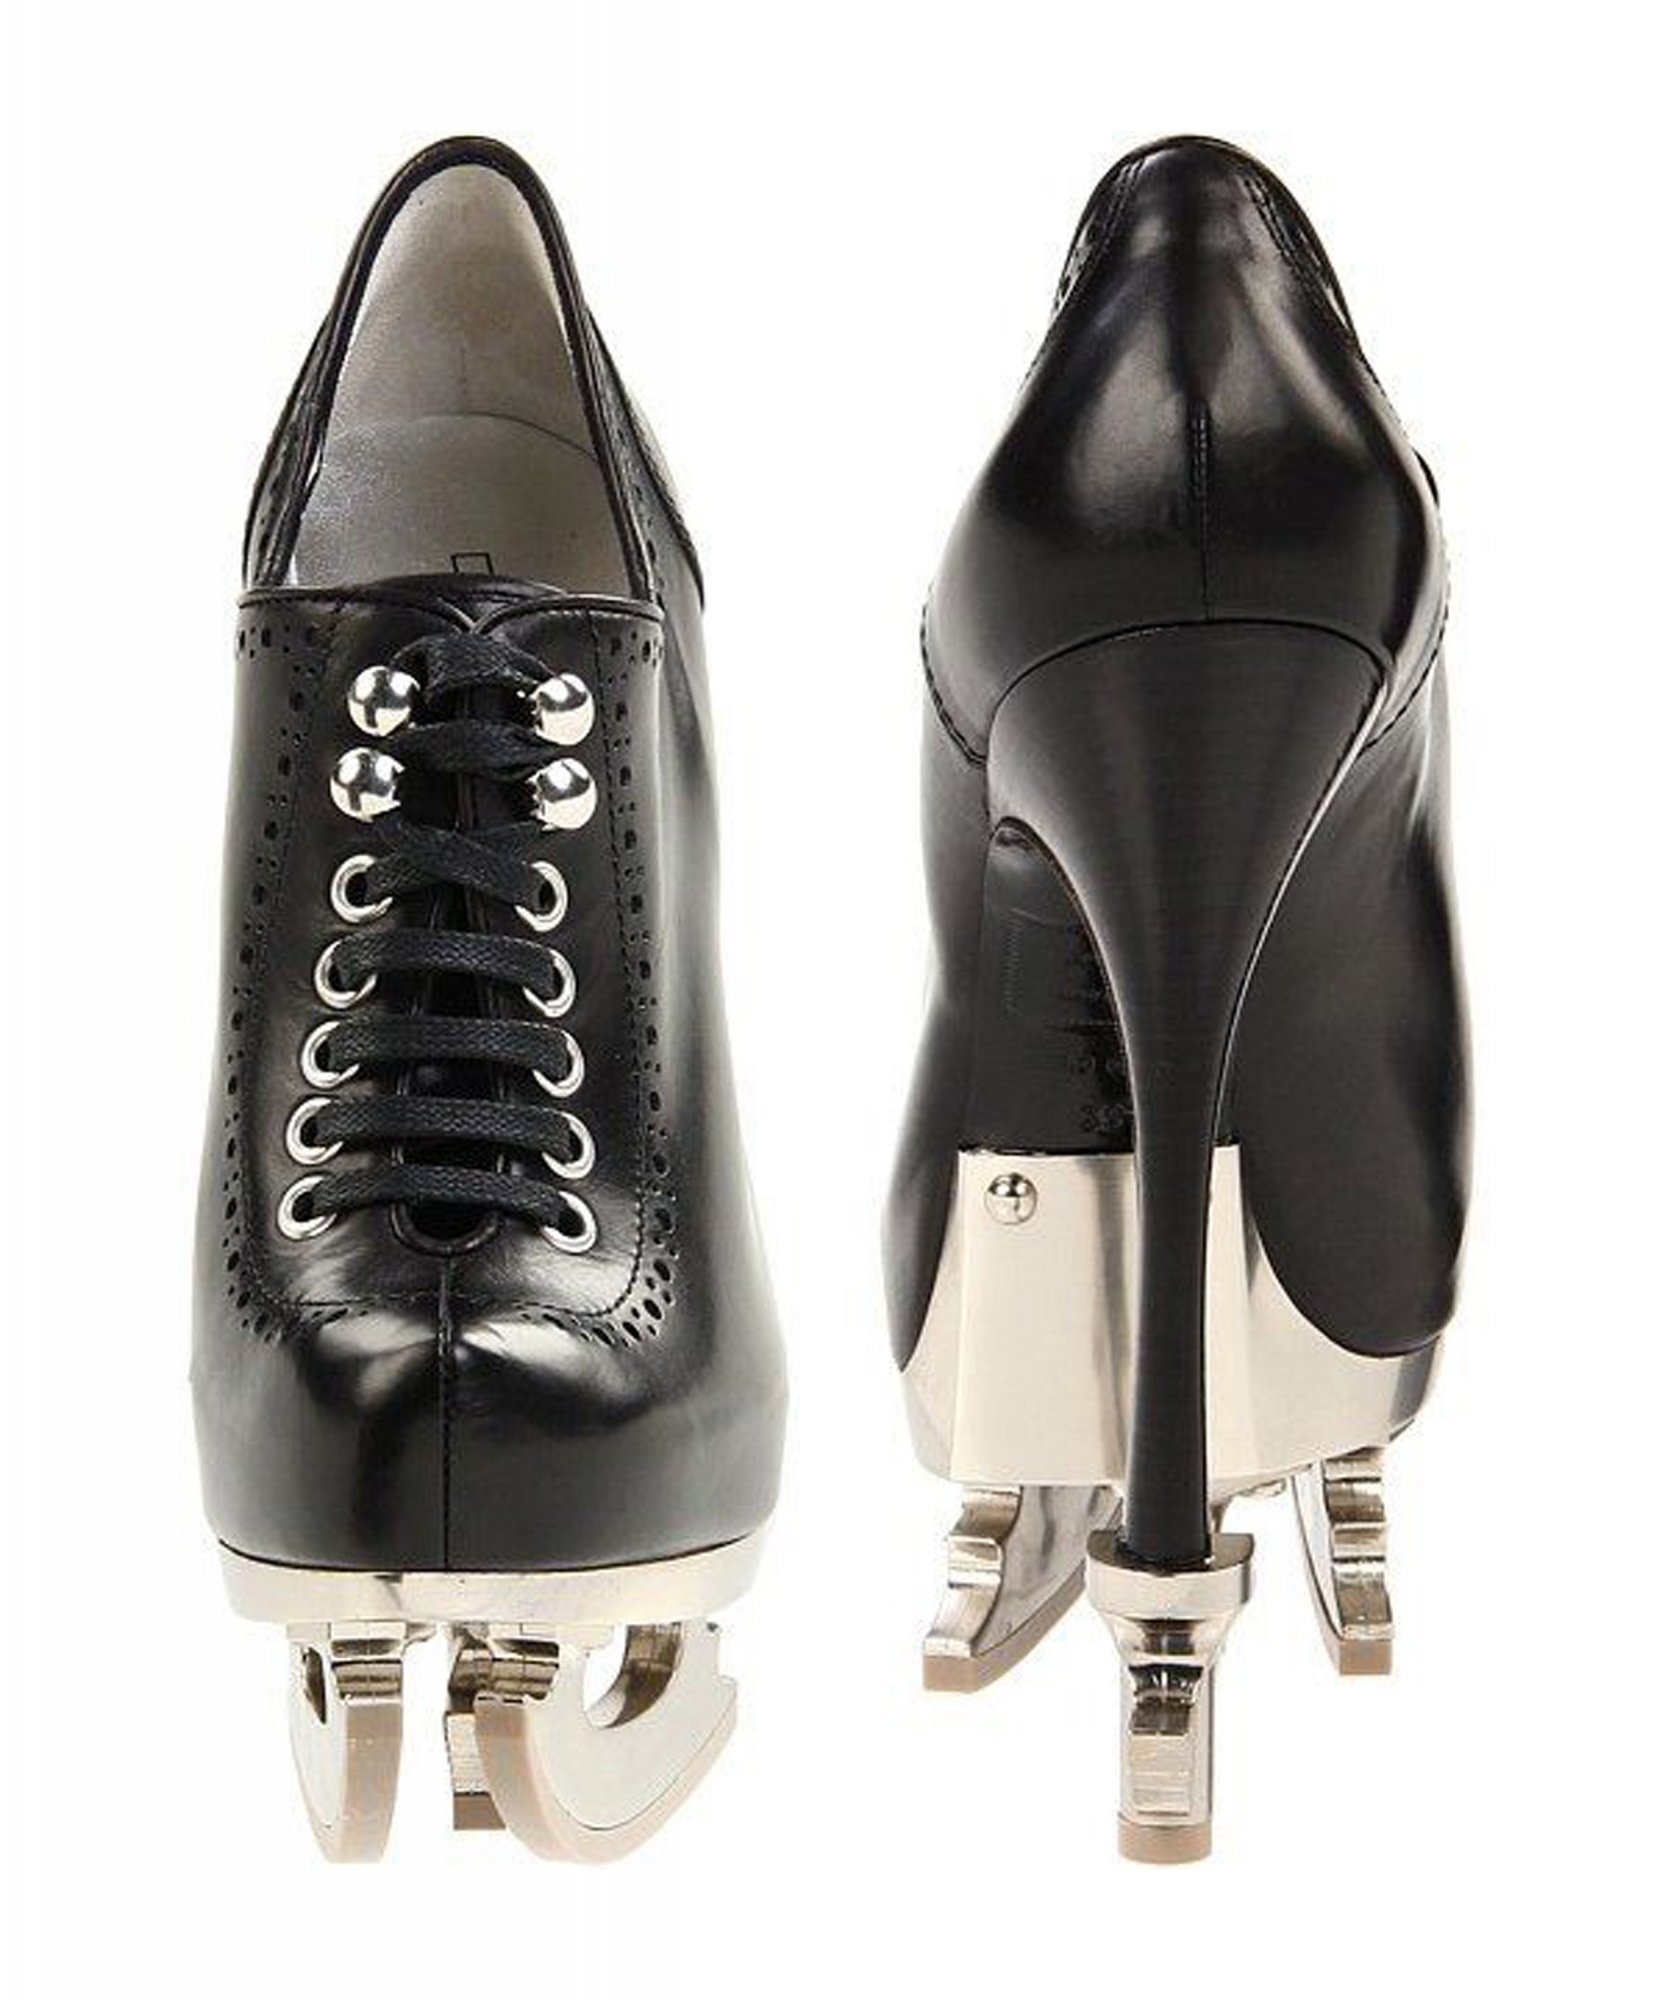 Dsquared2 Flip-Flop Heels | POPSUGAR Fashion UK